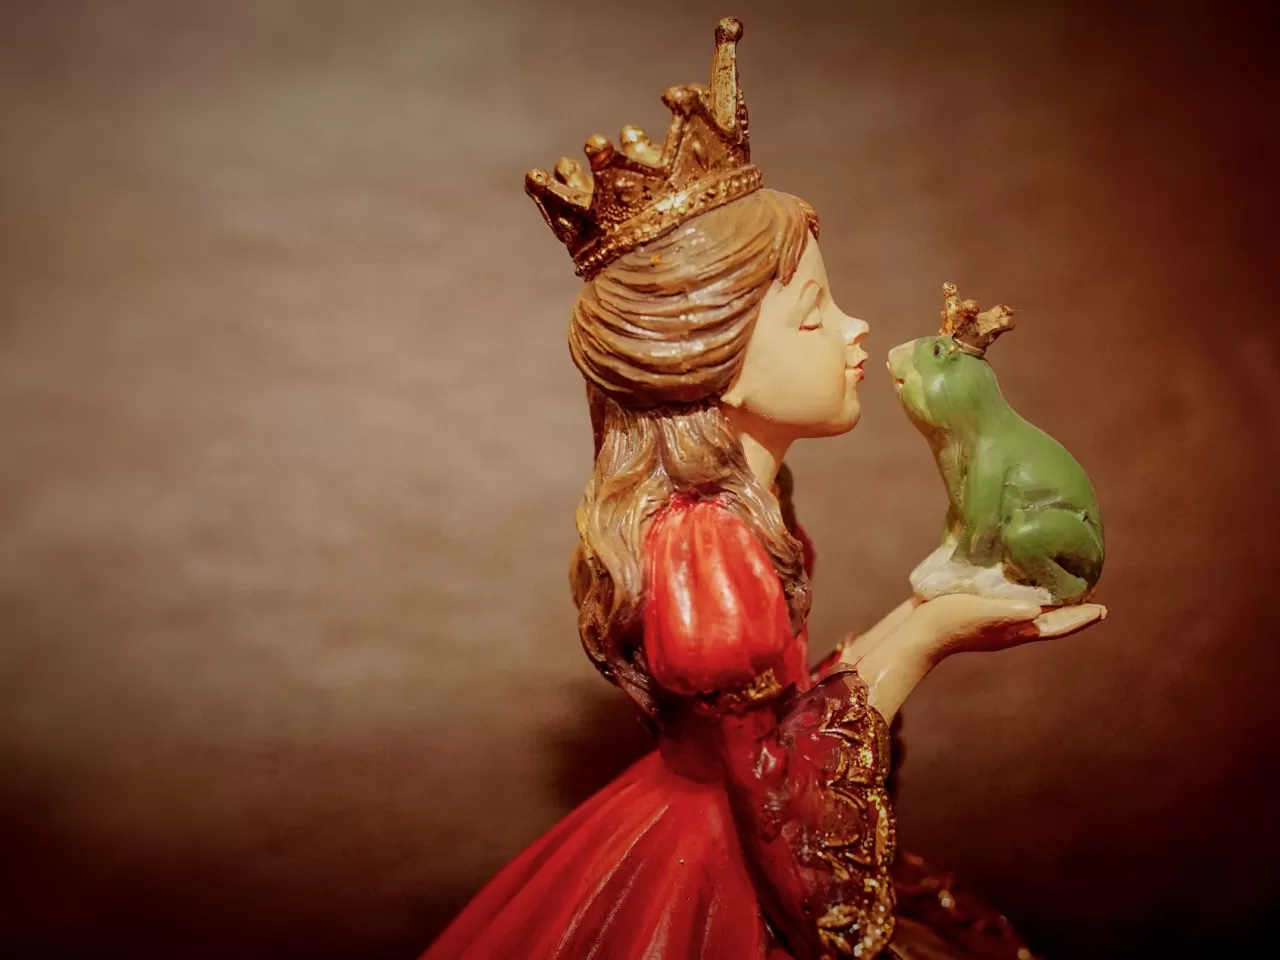 En İyi Disney Prenses Filmleri - Özgün Konulu ve Yüksek Puanlı 10 Prenses Filmi